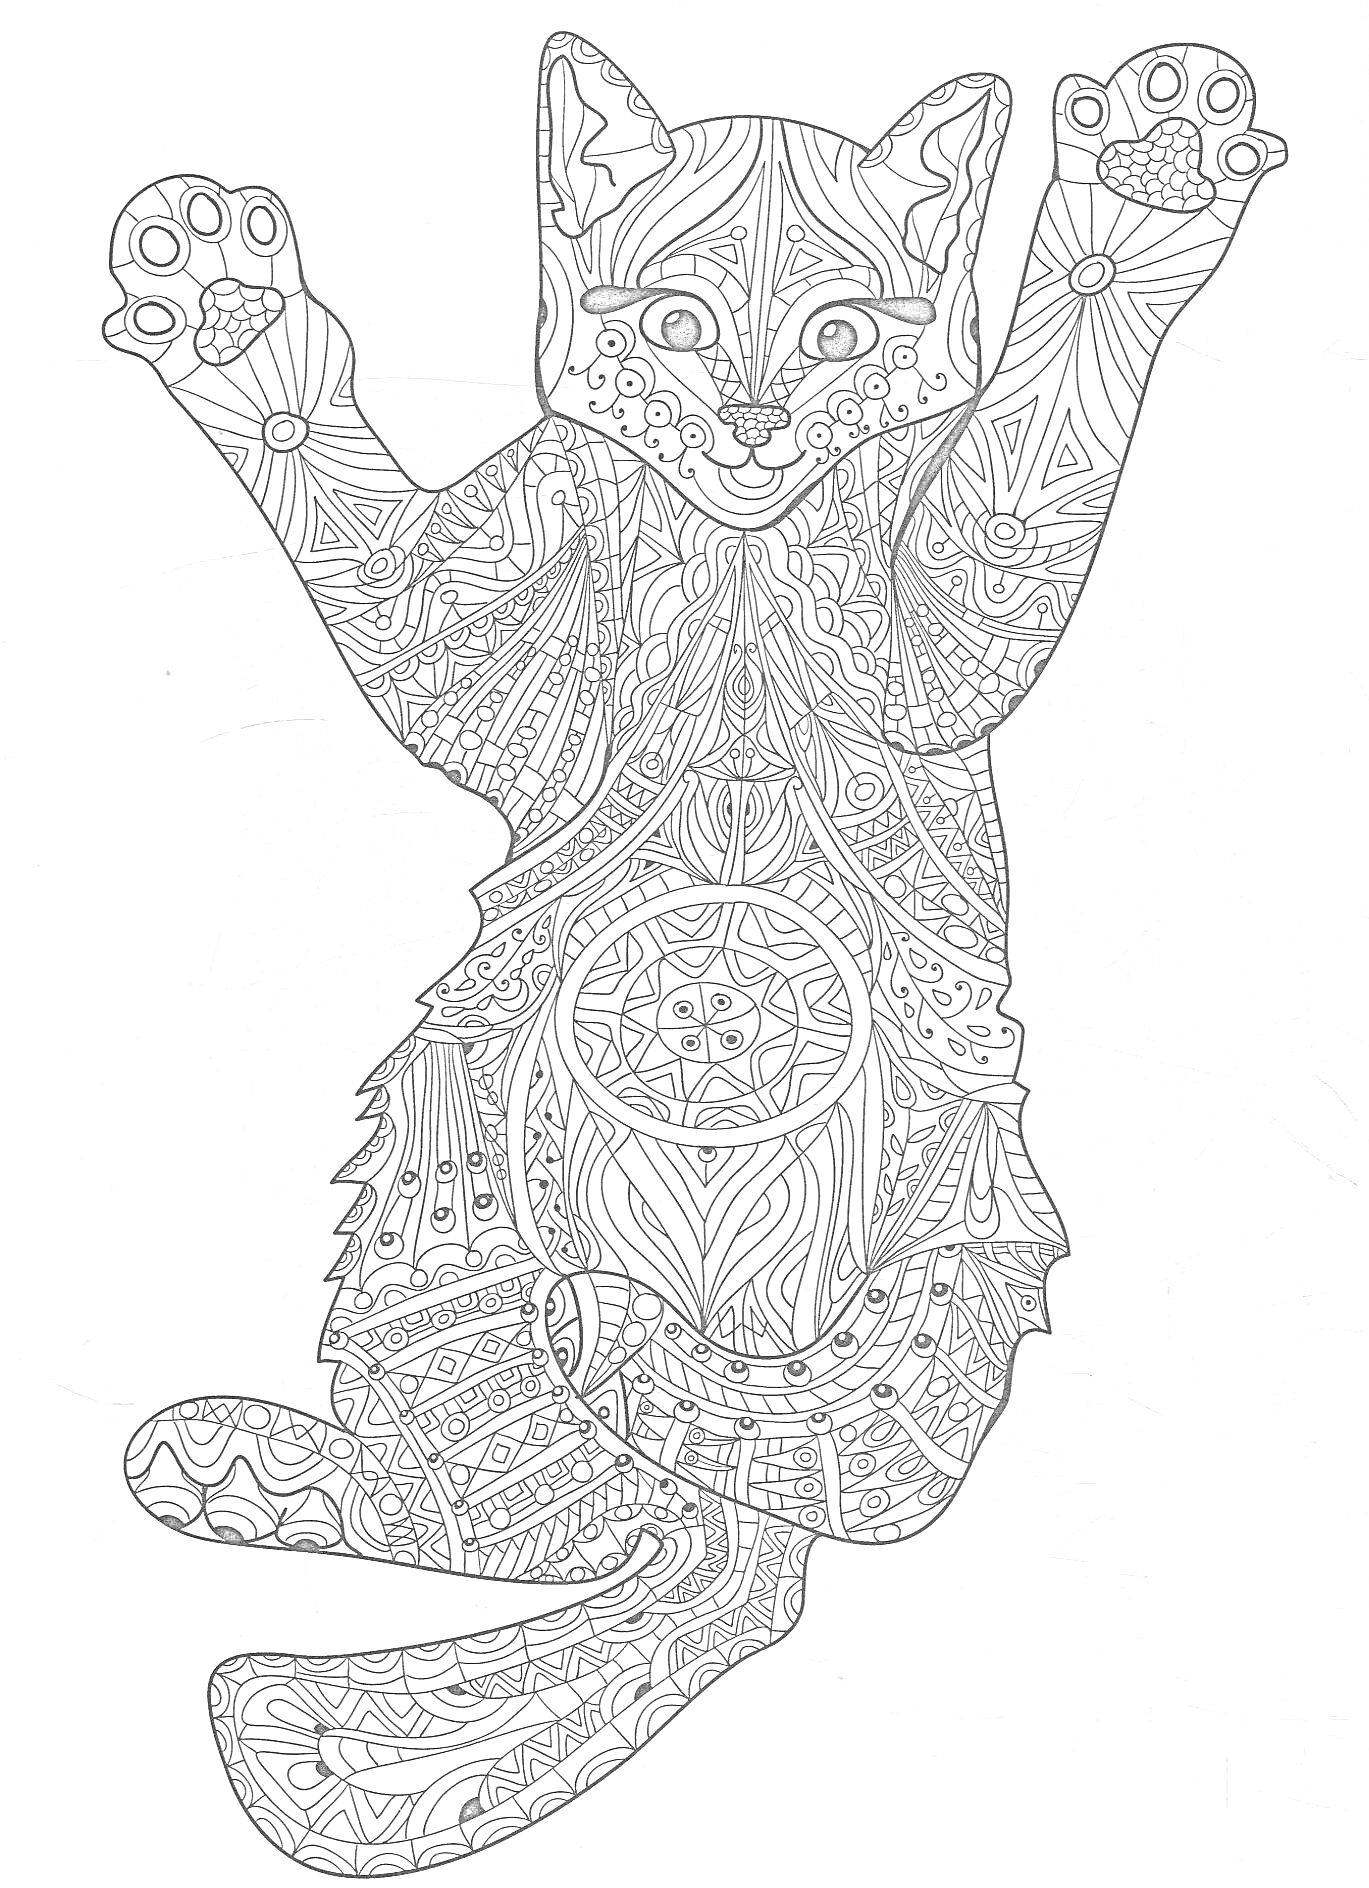 Раскраска Антистресс-раскраска с узорно-детализированной кошкой, включающая геометрические и абстрактные элементы, мандалы и узоры на голове, теле, лапах и хвосте.